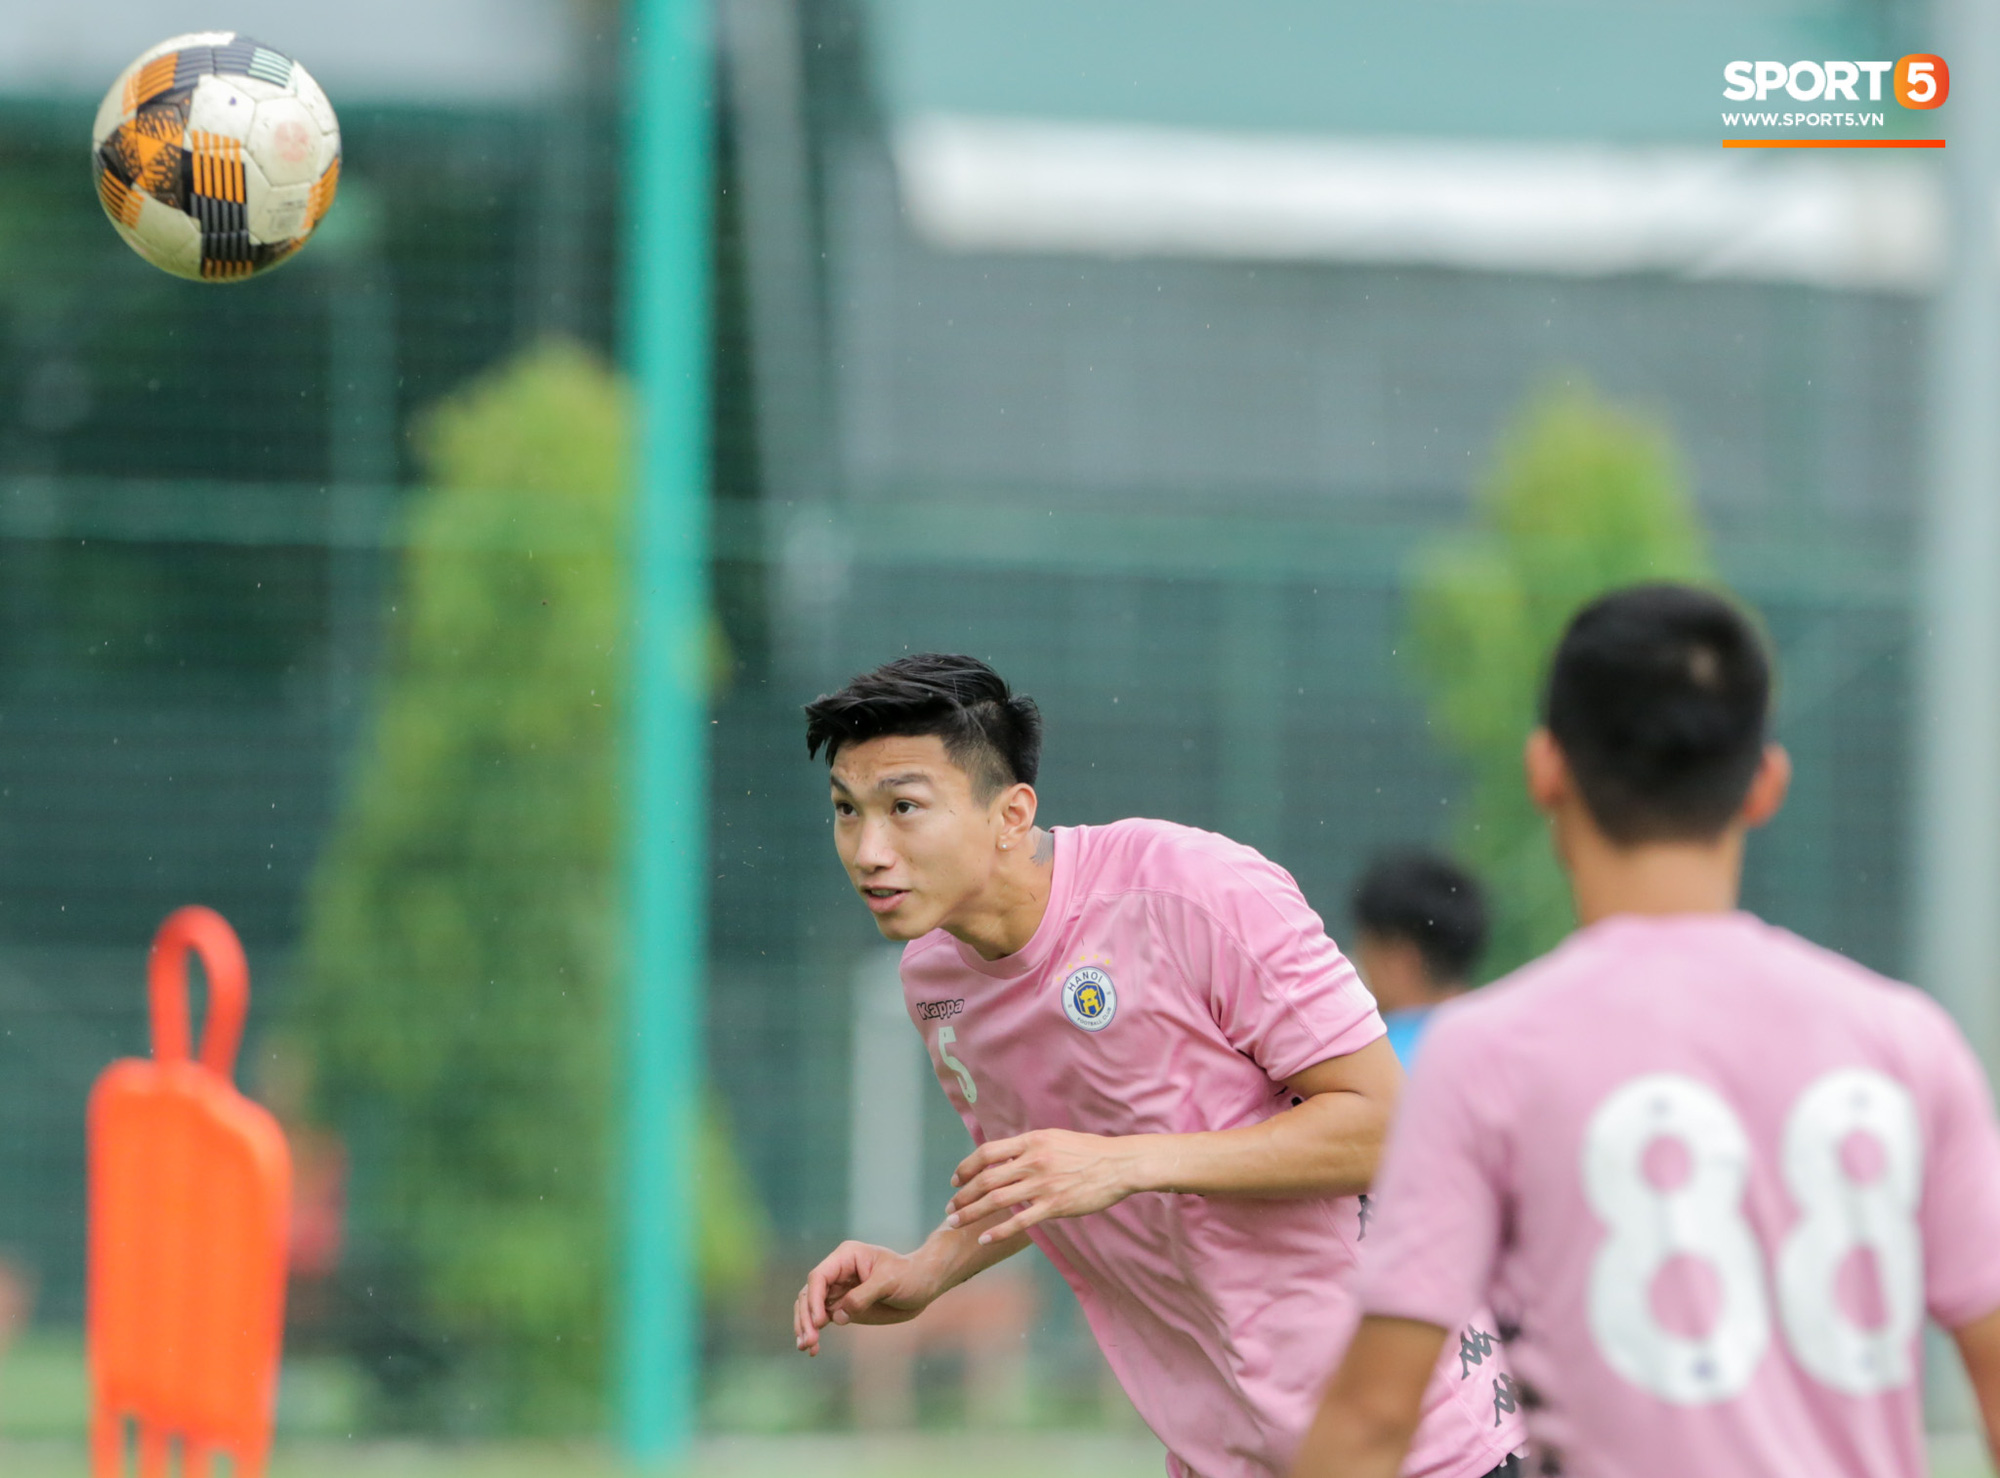 Văn Hậu huỷ đi chơi cùng bố mẹ, xin tập cùng Hà Nội FC ngay từ chiều 17/8 - Ảnh 1.